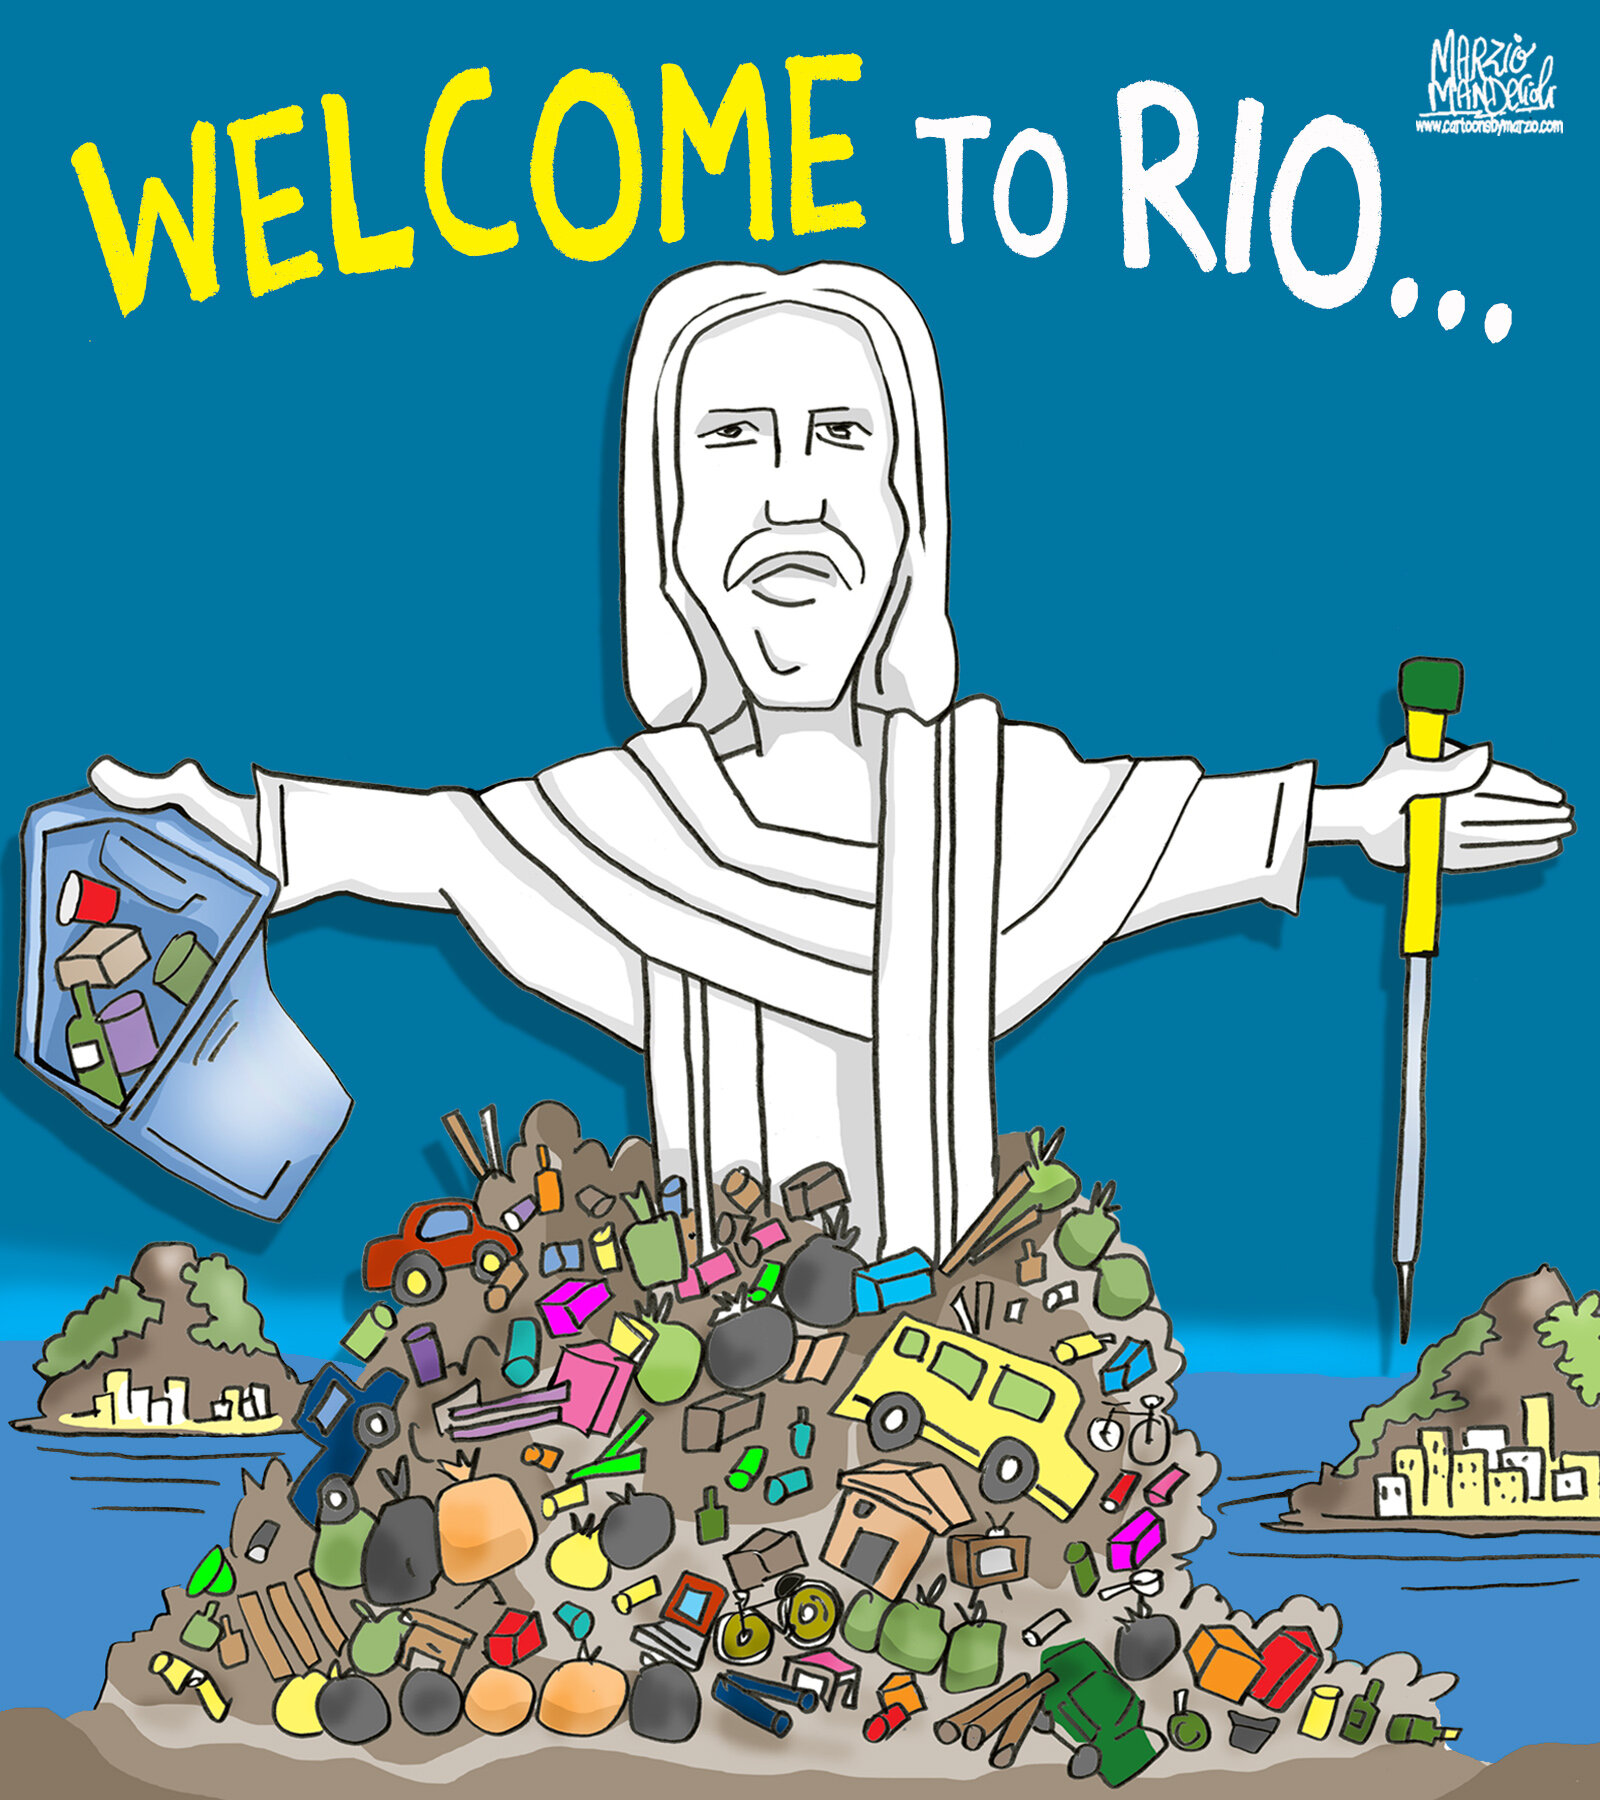 Rio de Janeiro Cartoon.jpg